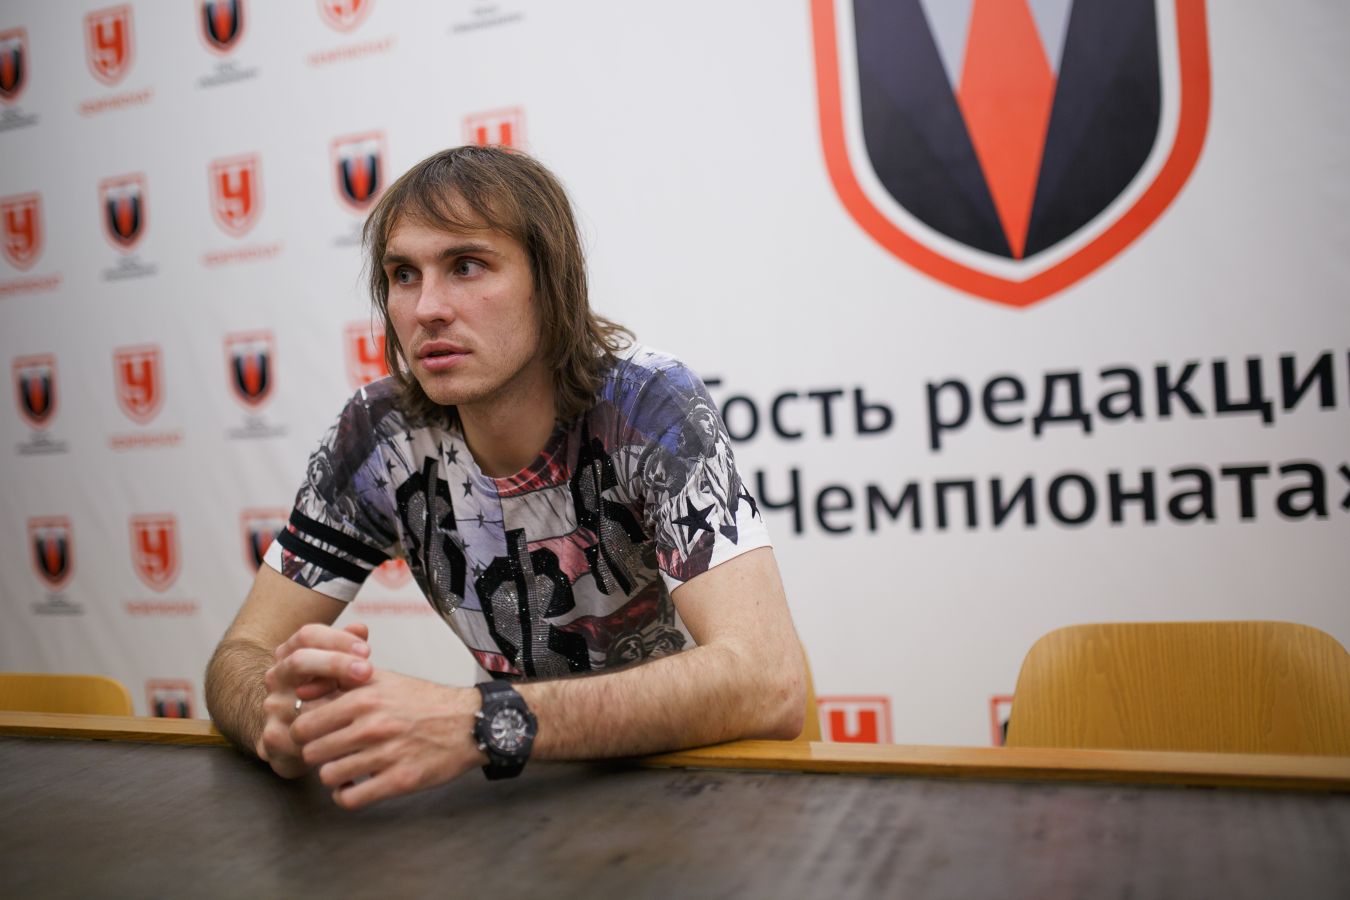 Виталий Дьяков: от нынешнего «Динамо» не знаешь, чего ожидать. «Факел» может победить